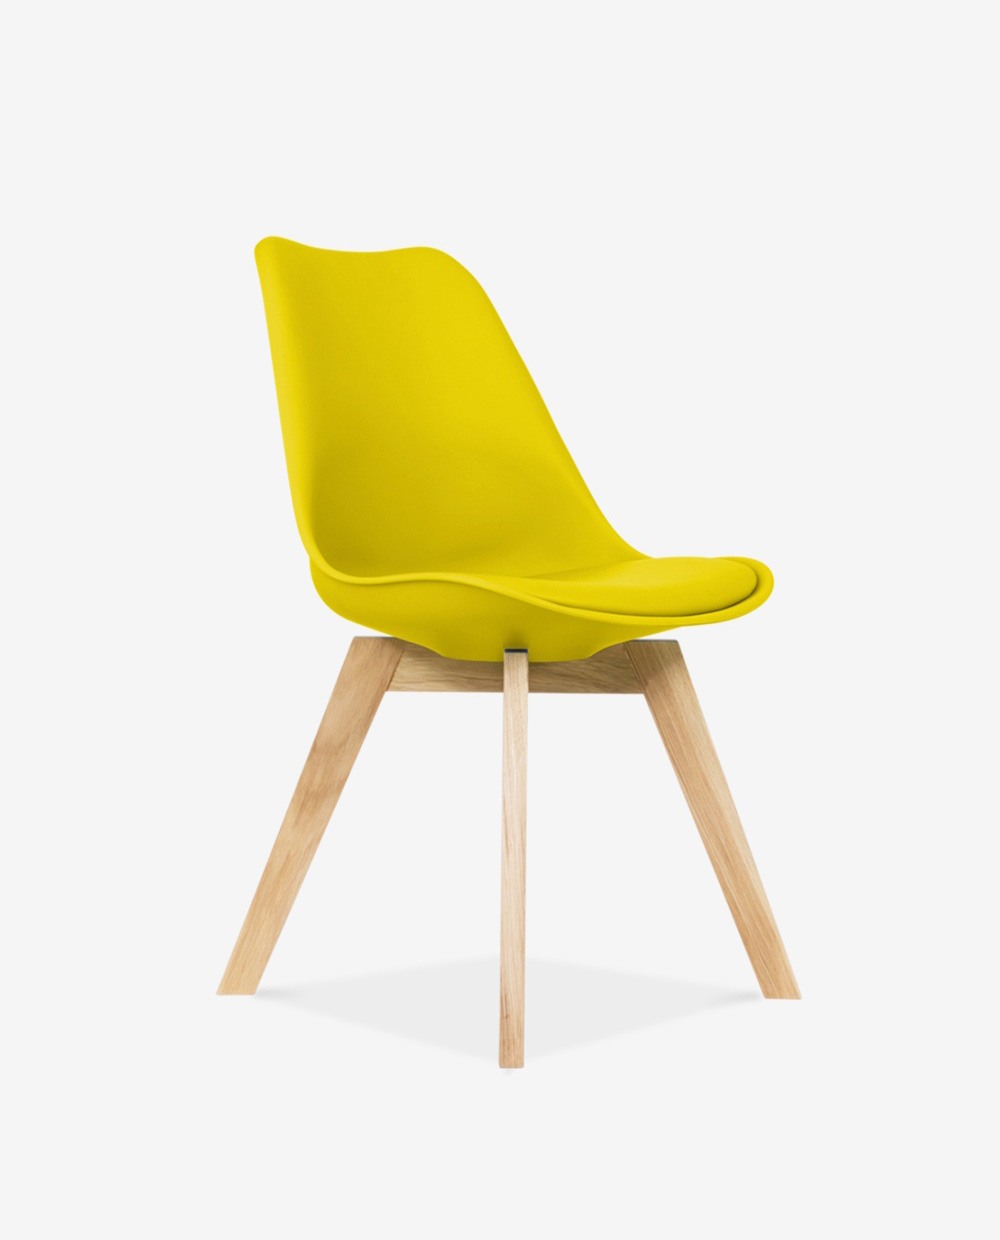 Yellow chair. Стул желтый. Стул дизайнерский желтый. Стул Эймс желтый. Желтый стул с белыми ножками.